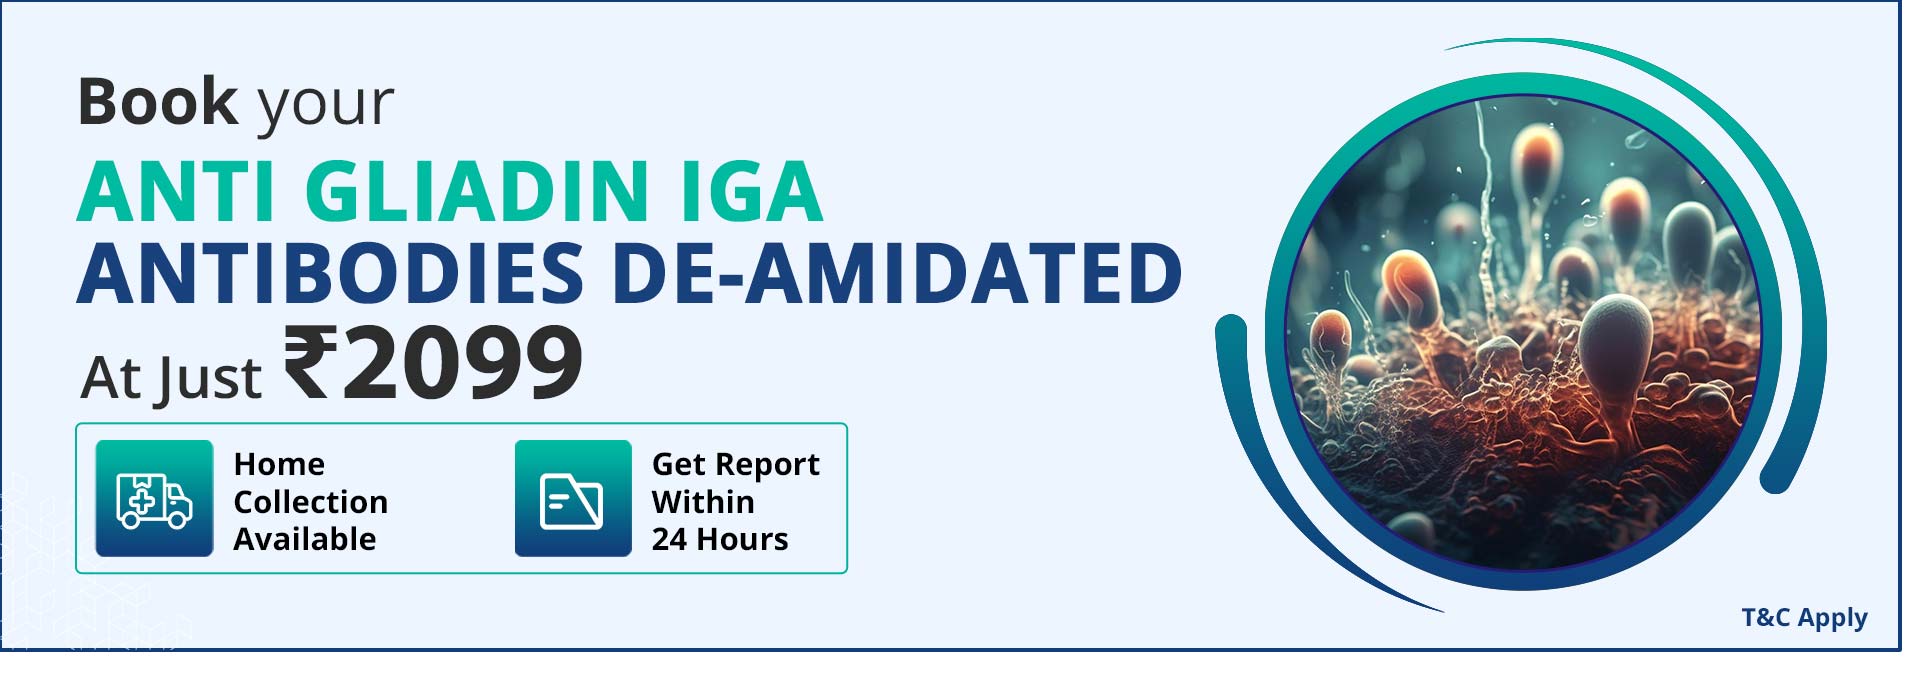 Anti Gliadin IgA Antibodies De-amidated